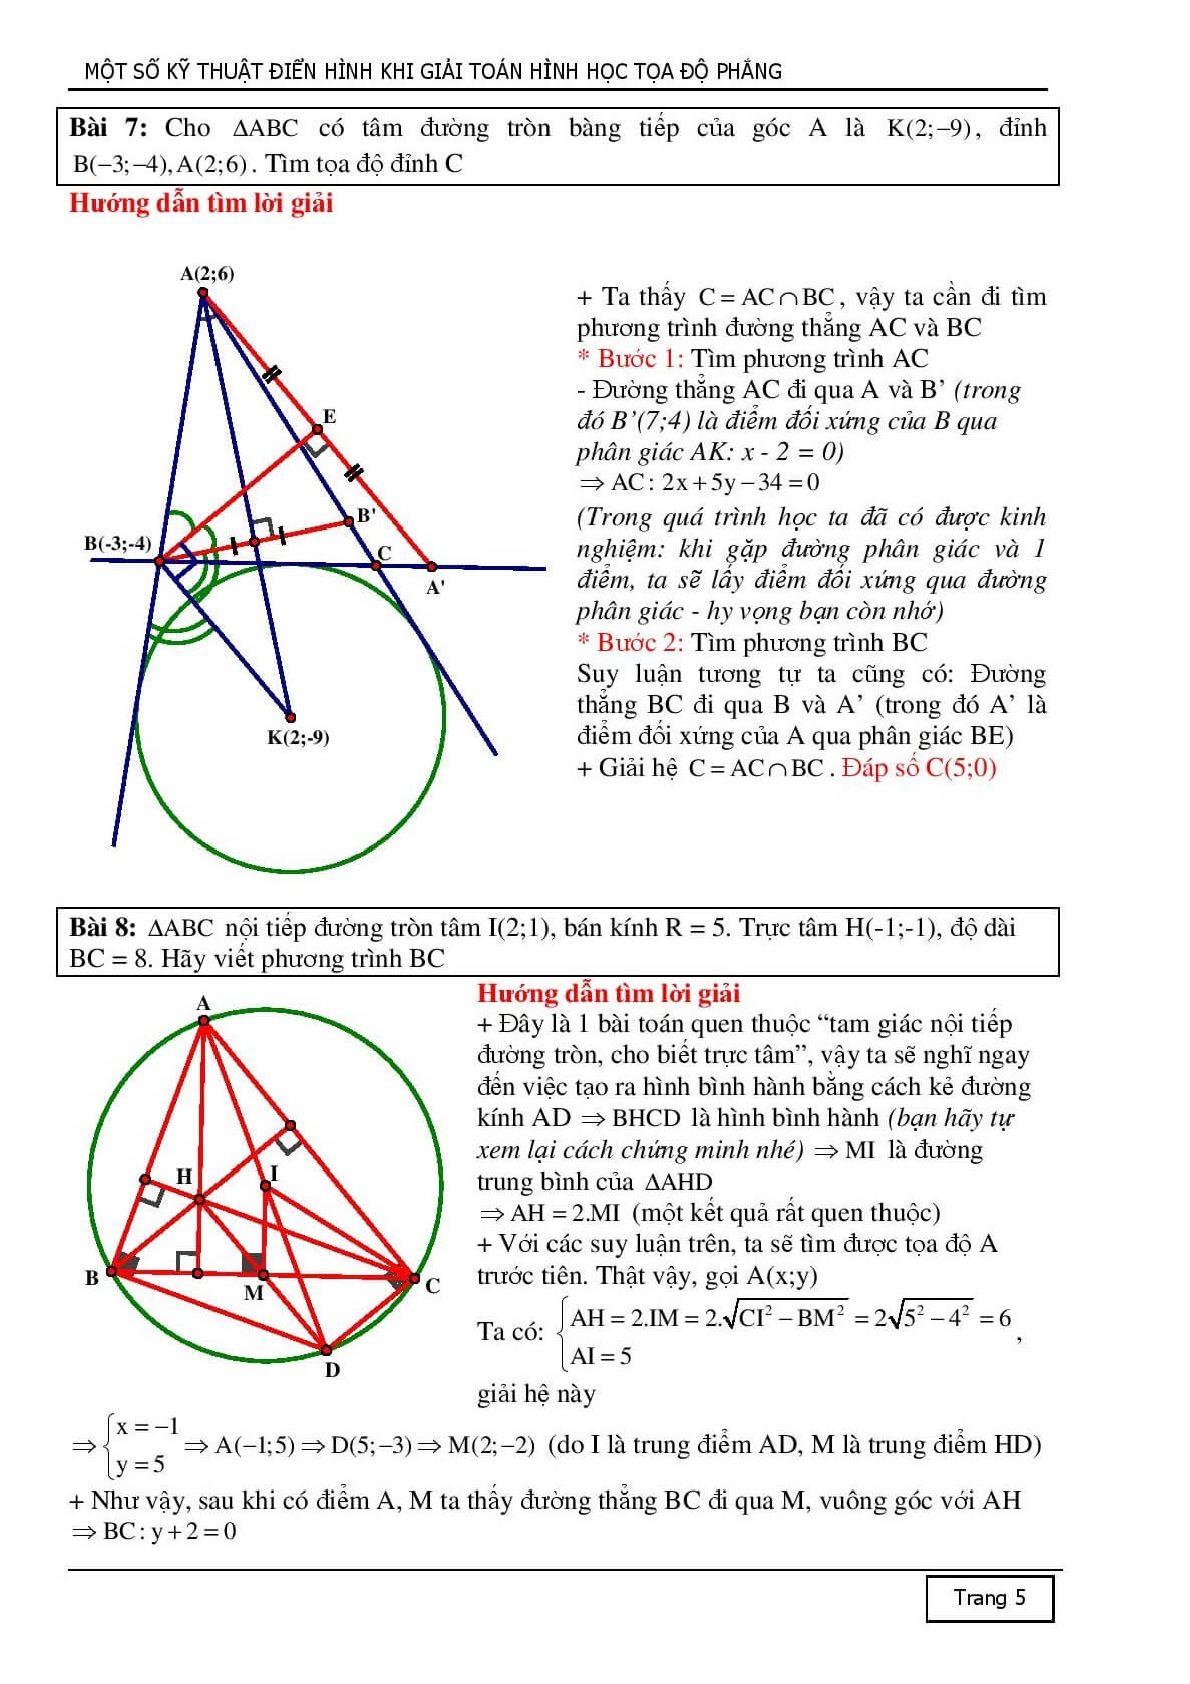 10 kỹ thuật tiếp cận để giải một bài toán hình học Oxy (trang 5)